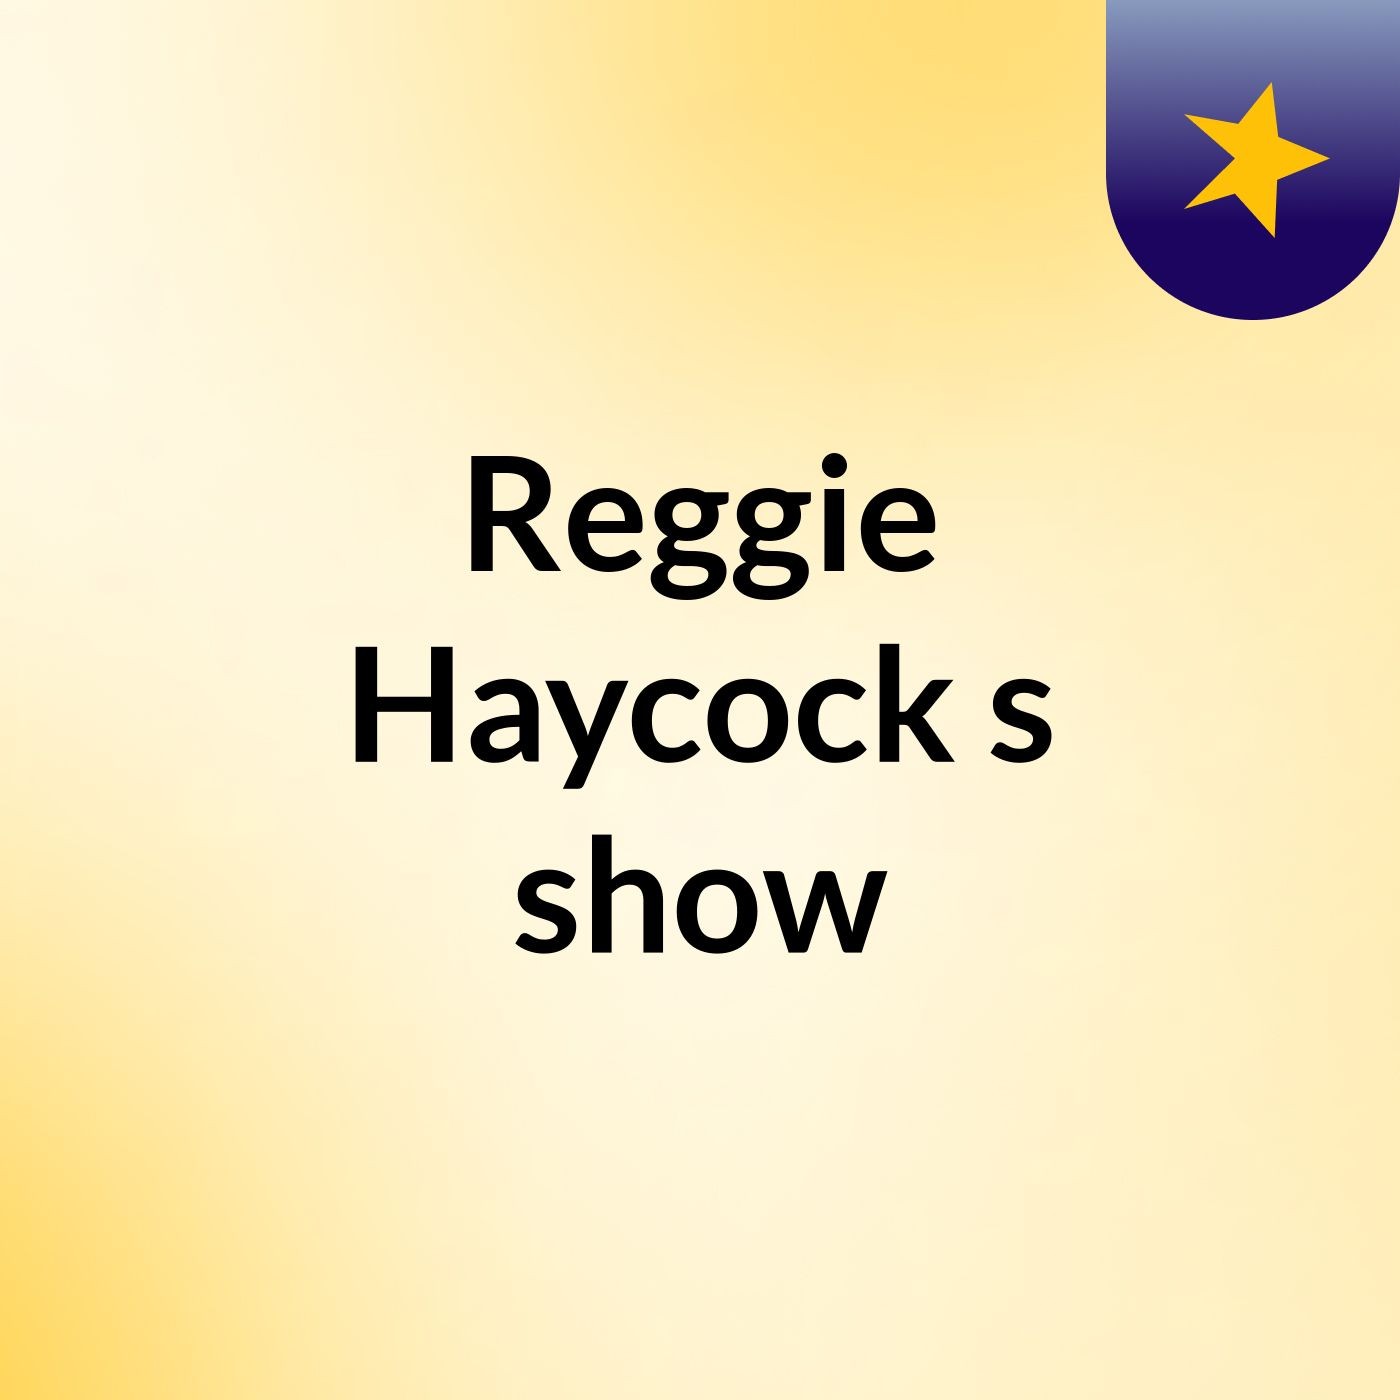 Reggie Haycock's show